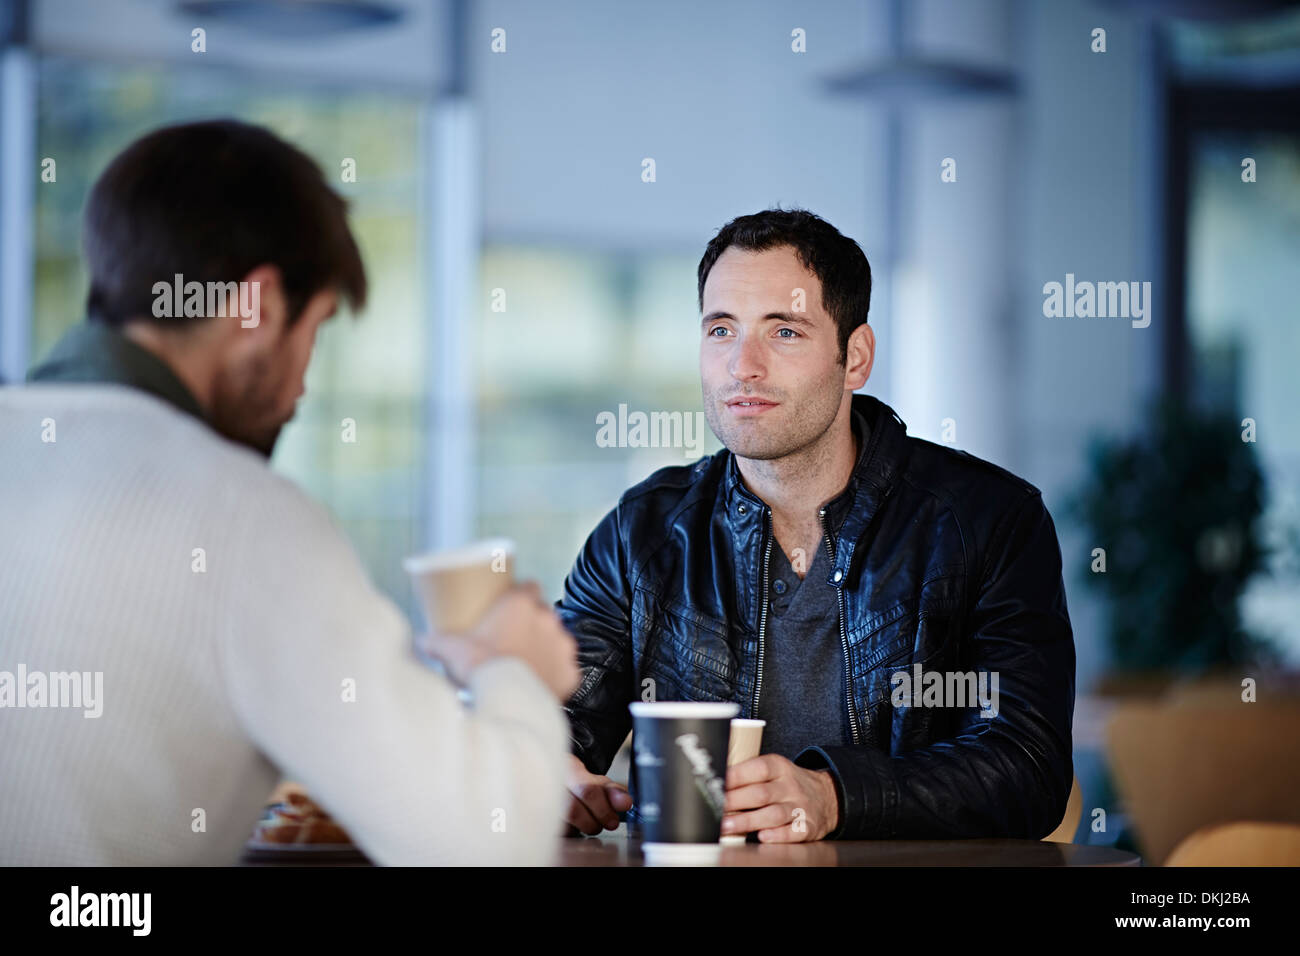 Men having coffee in cafe Stock Photo